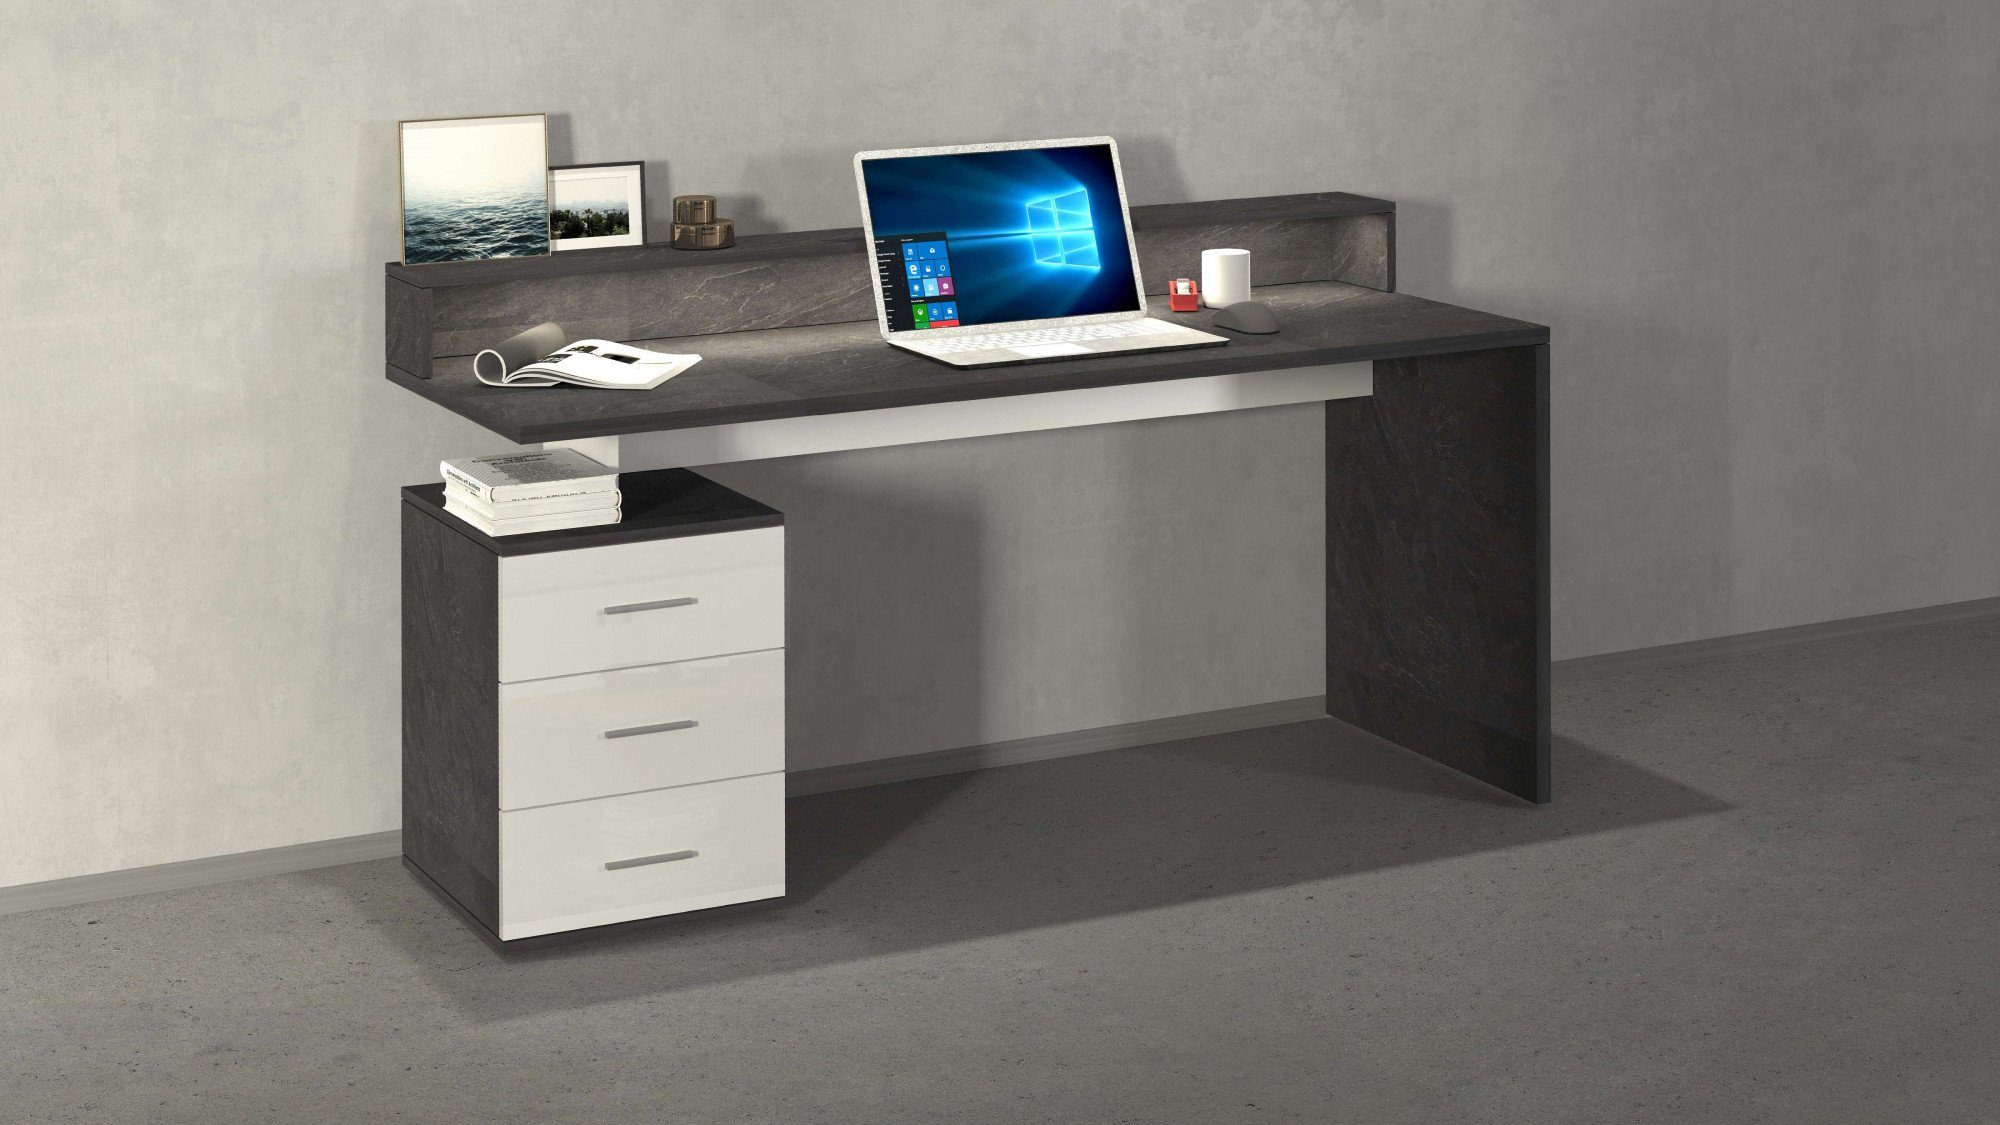 Tecnos Schreibtisch NEW SELINA, mit Schreibtischaufsatz, hochwertiges ital. Design, Breite 160 cm schiefer/weiß hochglanz